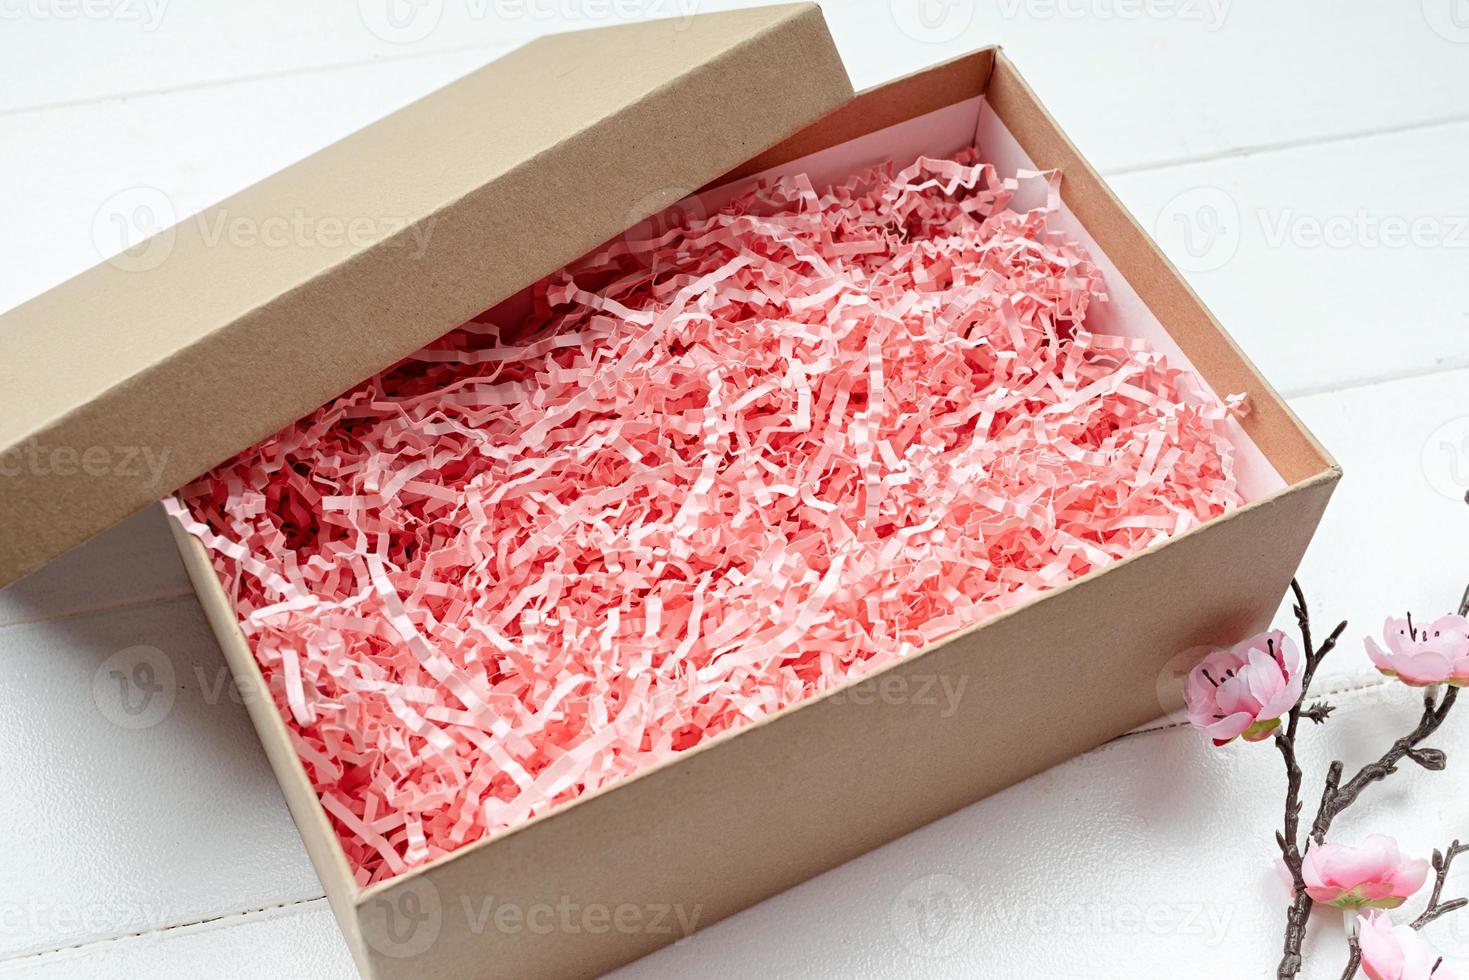 geschredderte rosa papierverpackungsmaterialstruktur in einer handwerksbox mit sakura-zweig, mockup-design foto